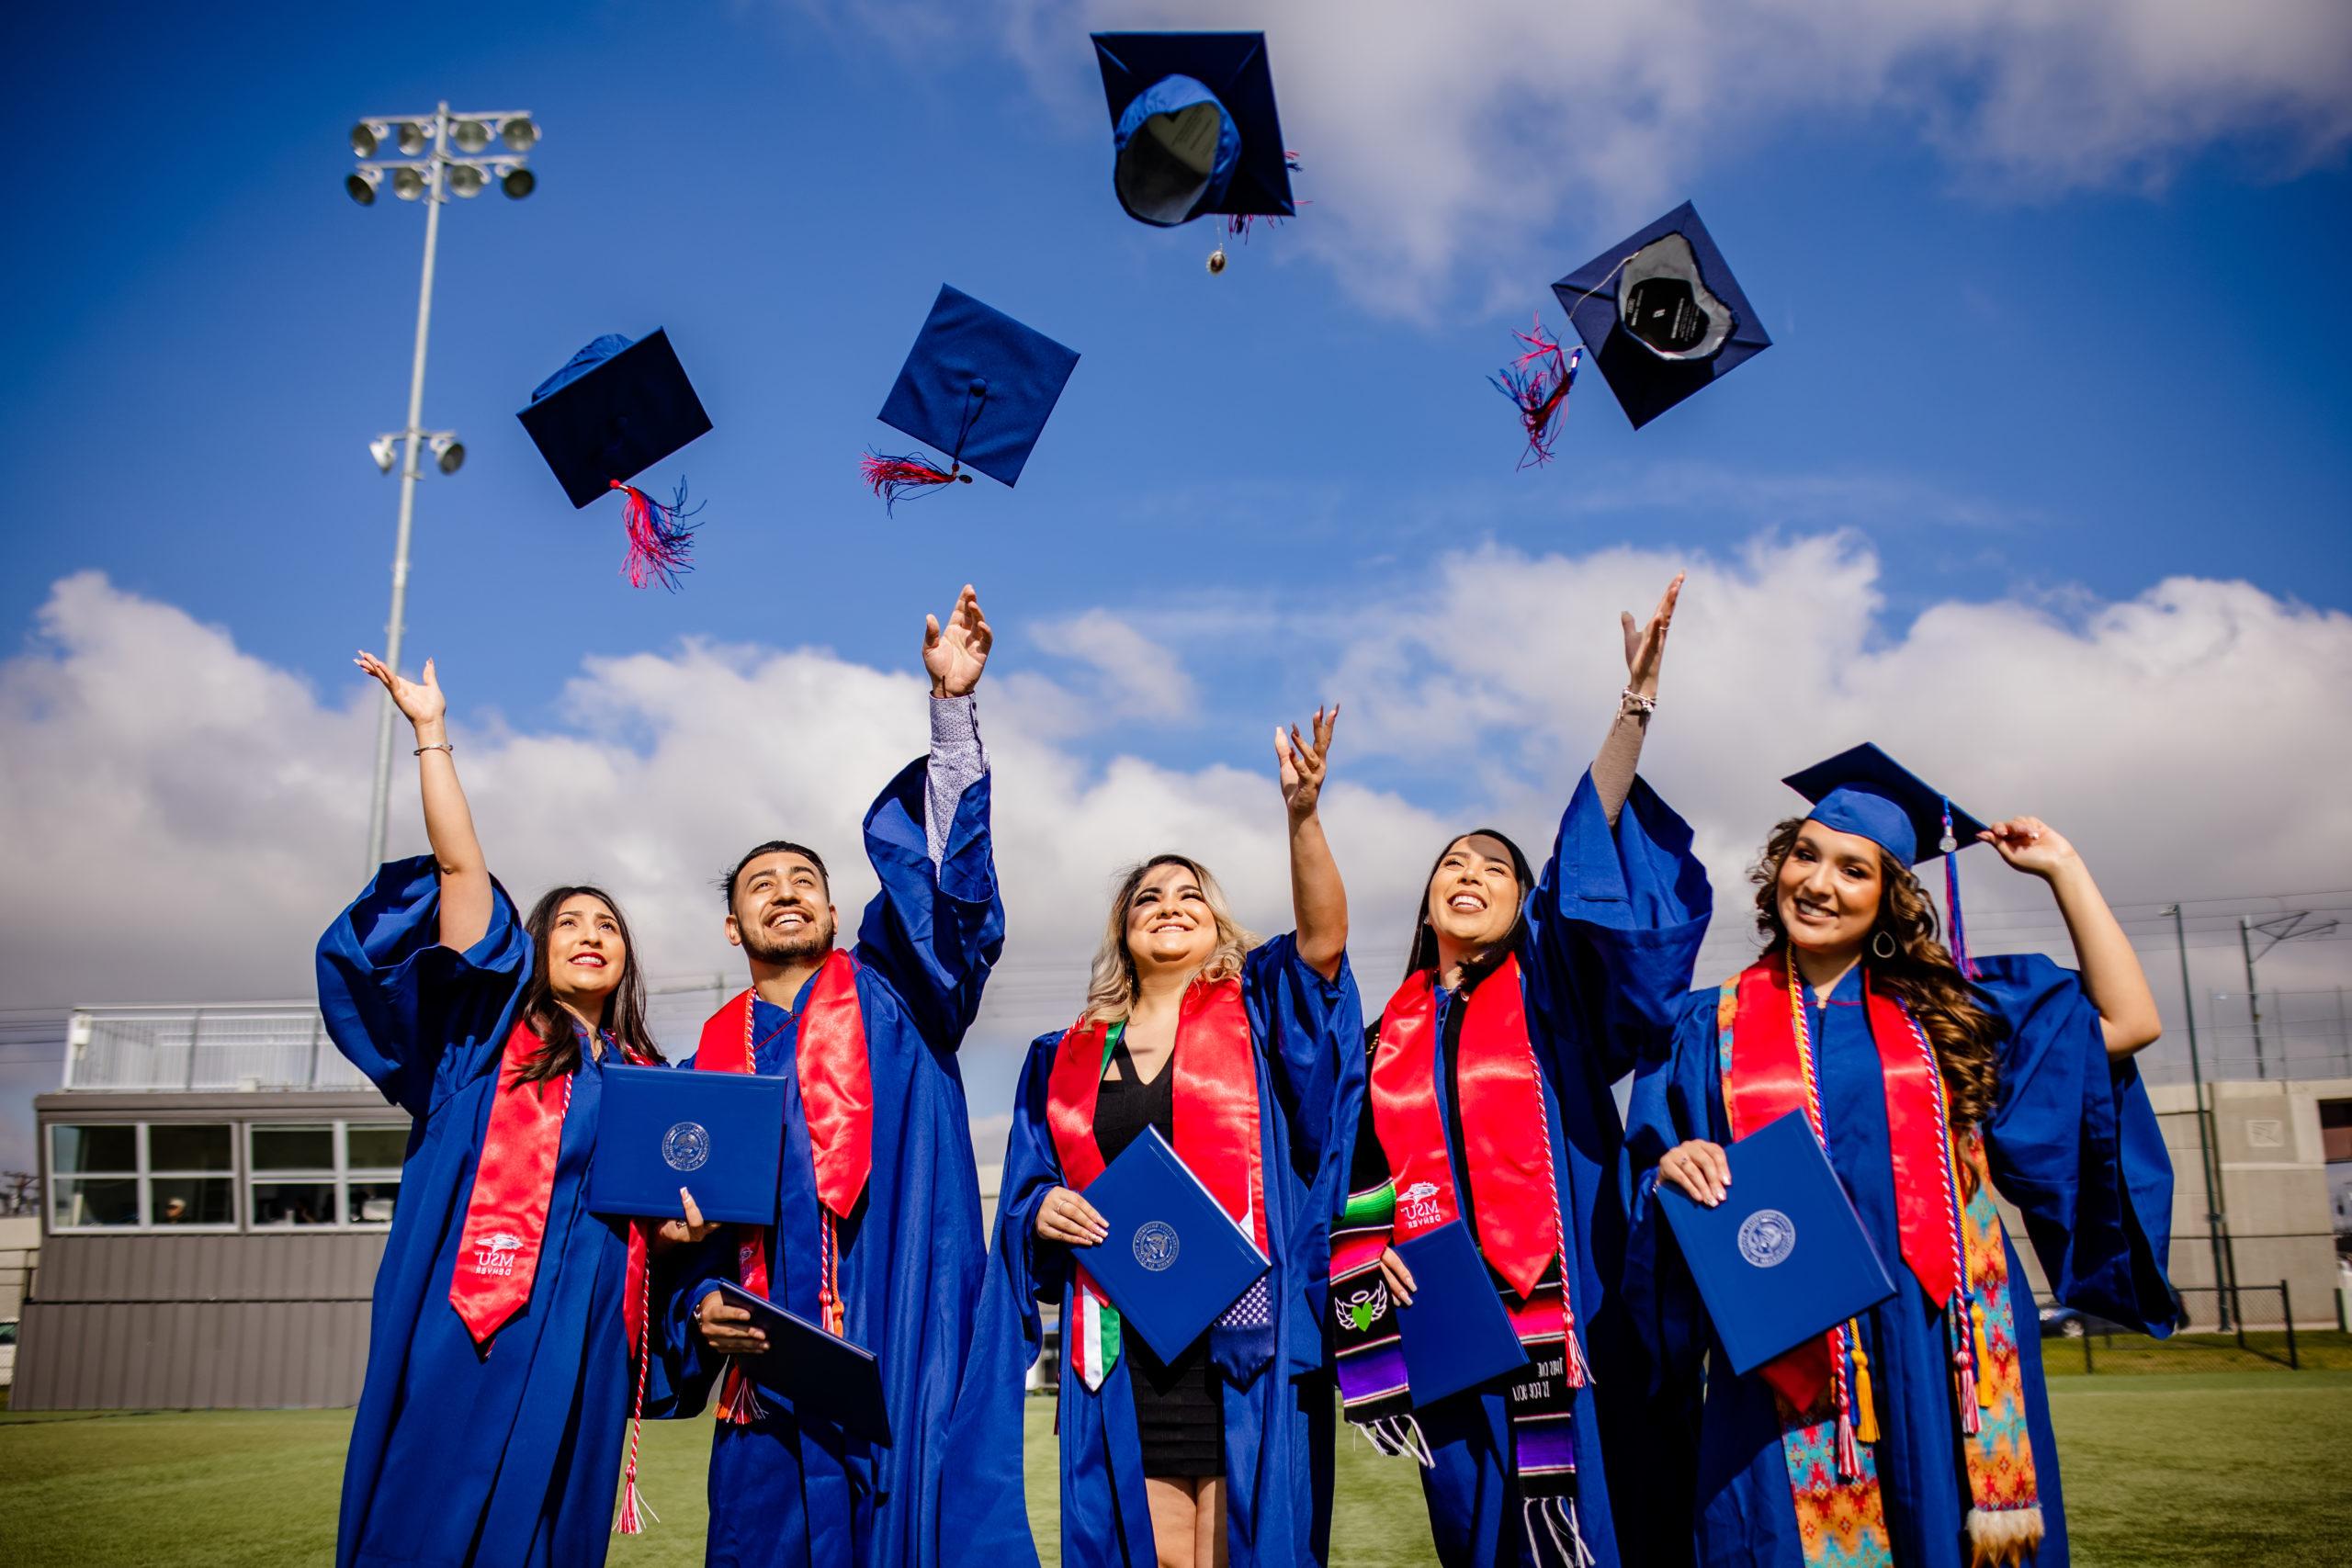 密歇根州立大学丹佛 students celebrating graduating by throwing their graduation caps in the air